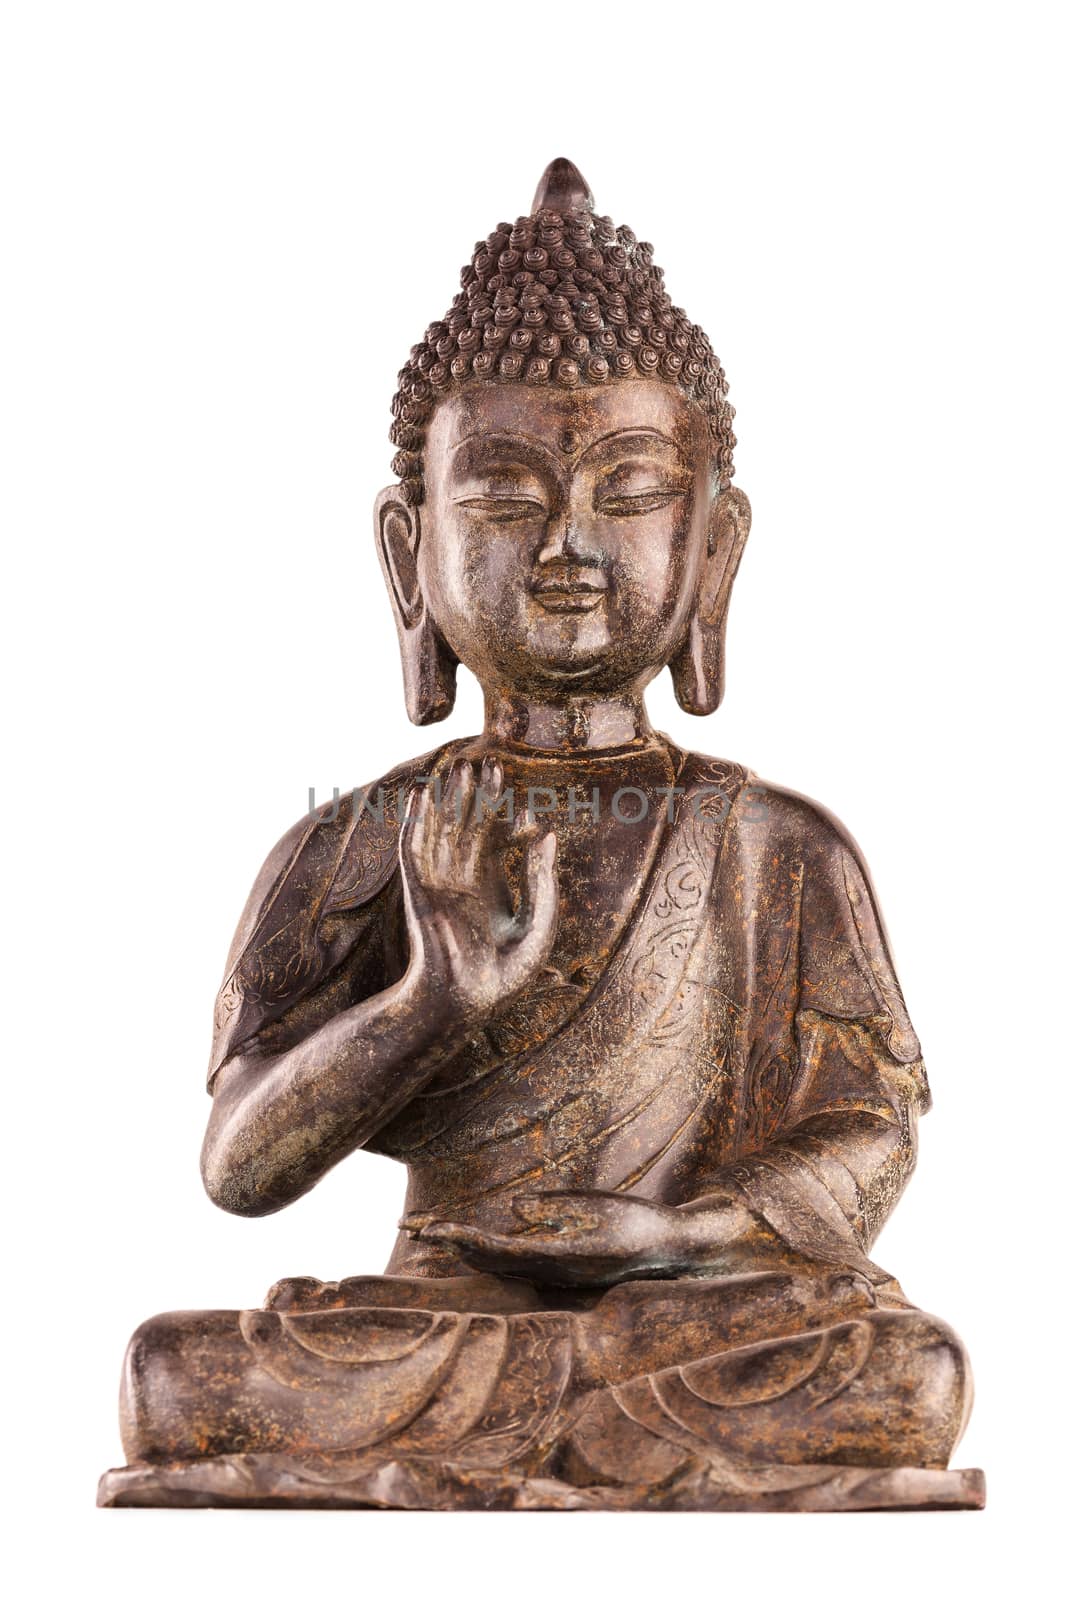 Buddha Shakyamuni's figure in vitarka mudra.  by dymov